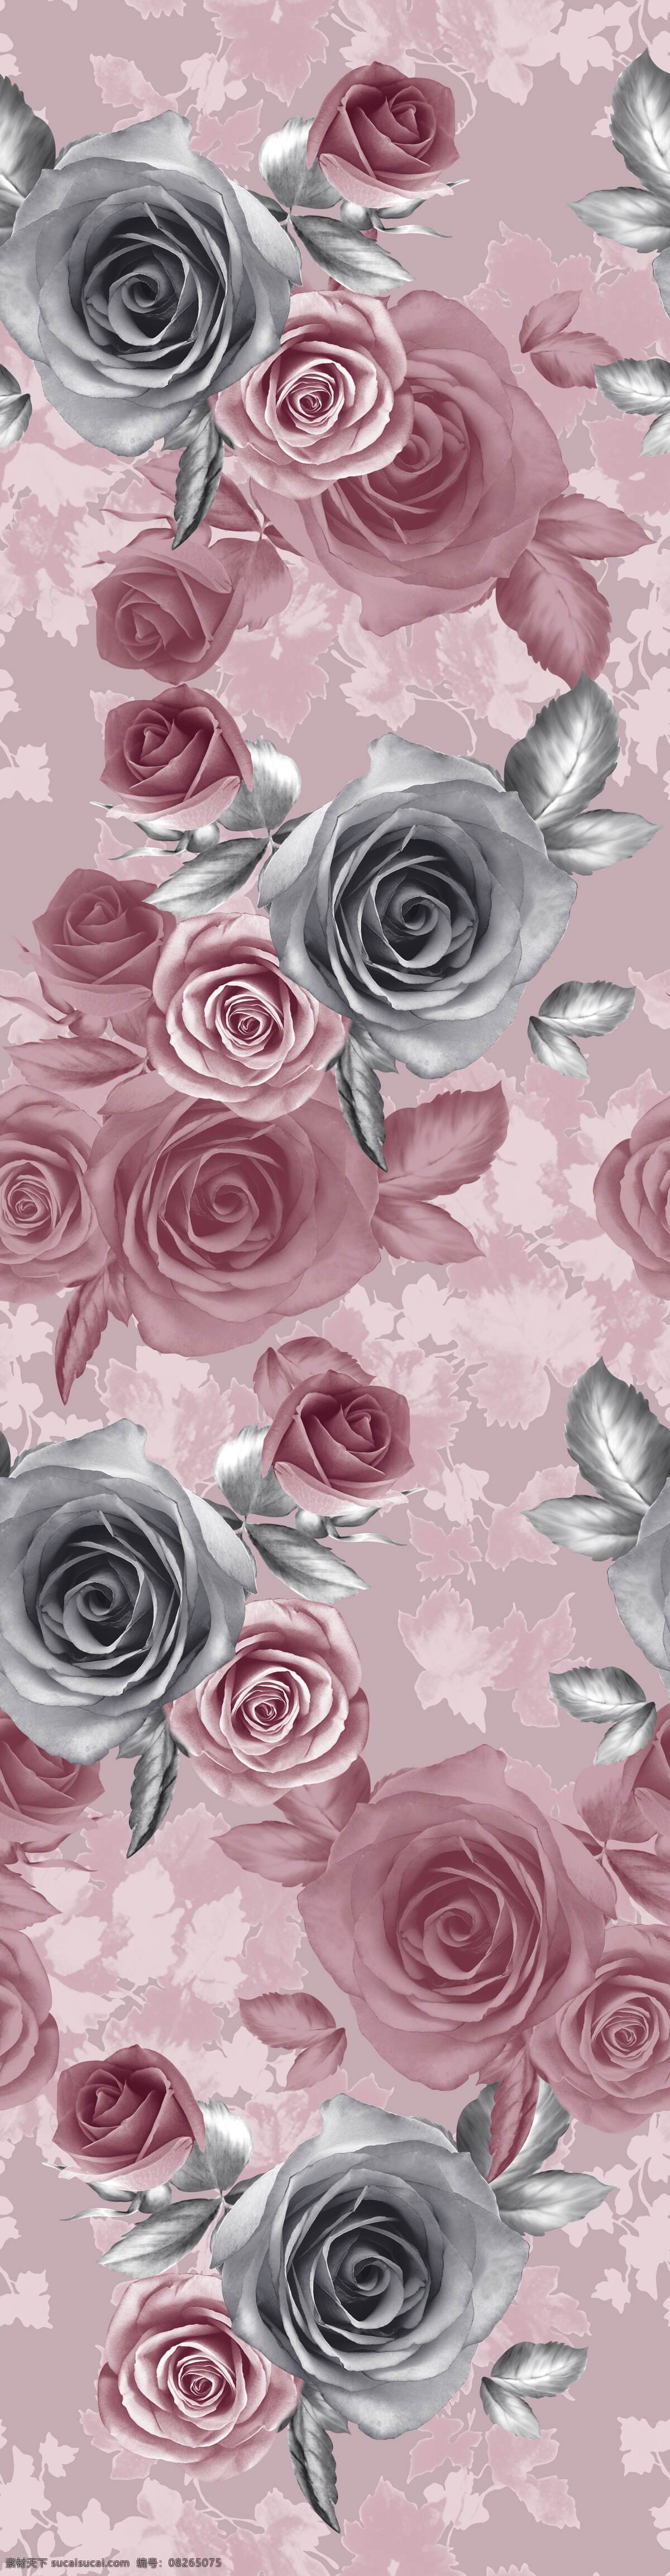 家纺设计素材 家纺图案 花型设计 图案设计 玫瑰 印花设计 背景底纹 底纹边框